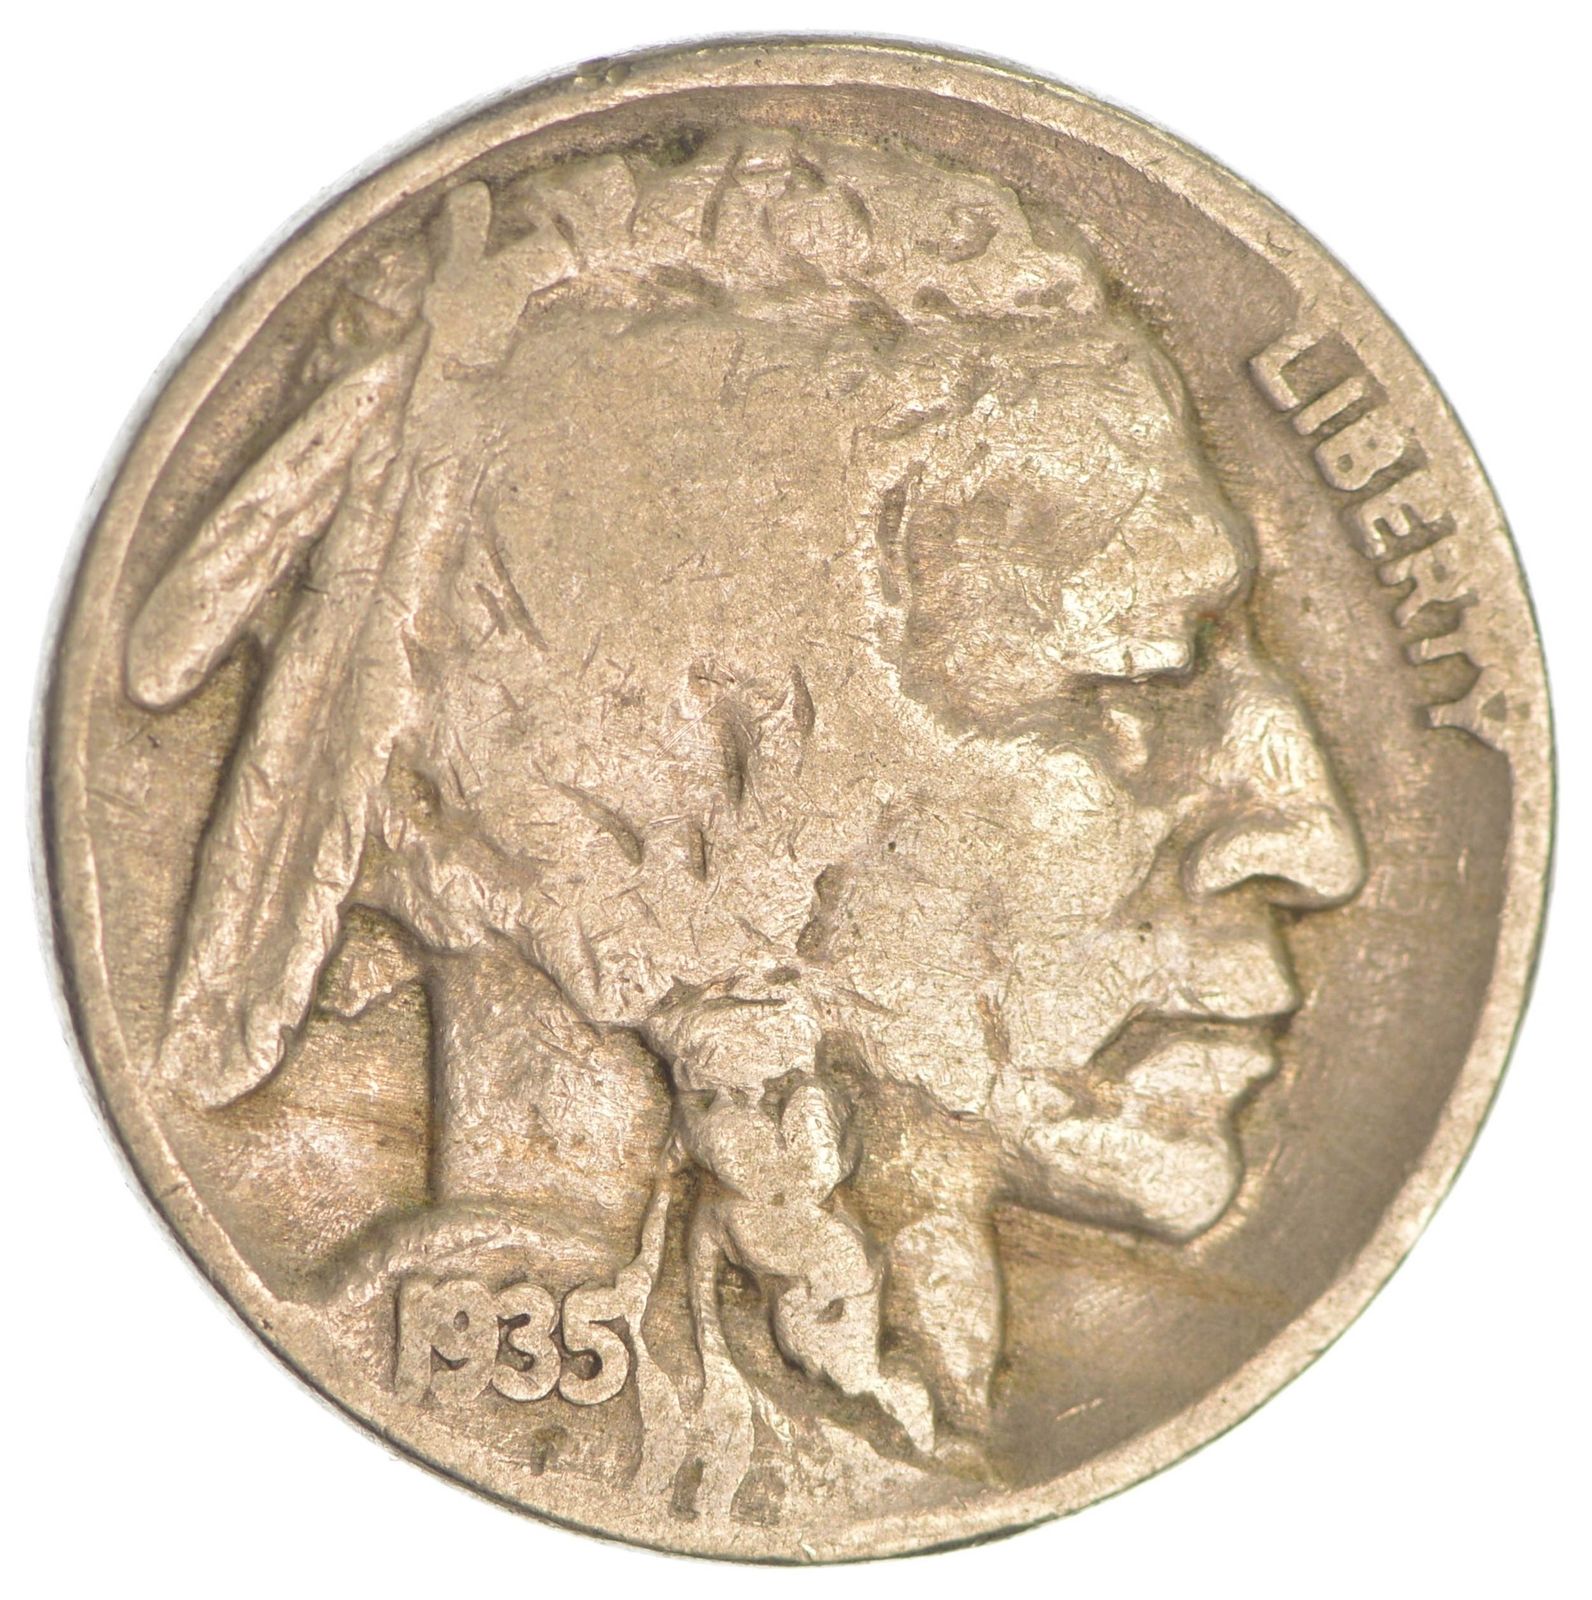 1935 Double Die Reverse Buffalo Nickel